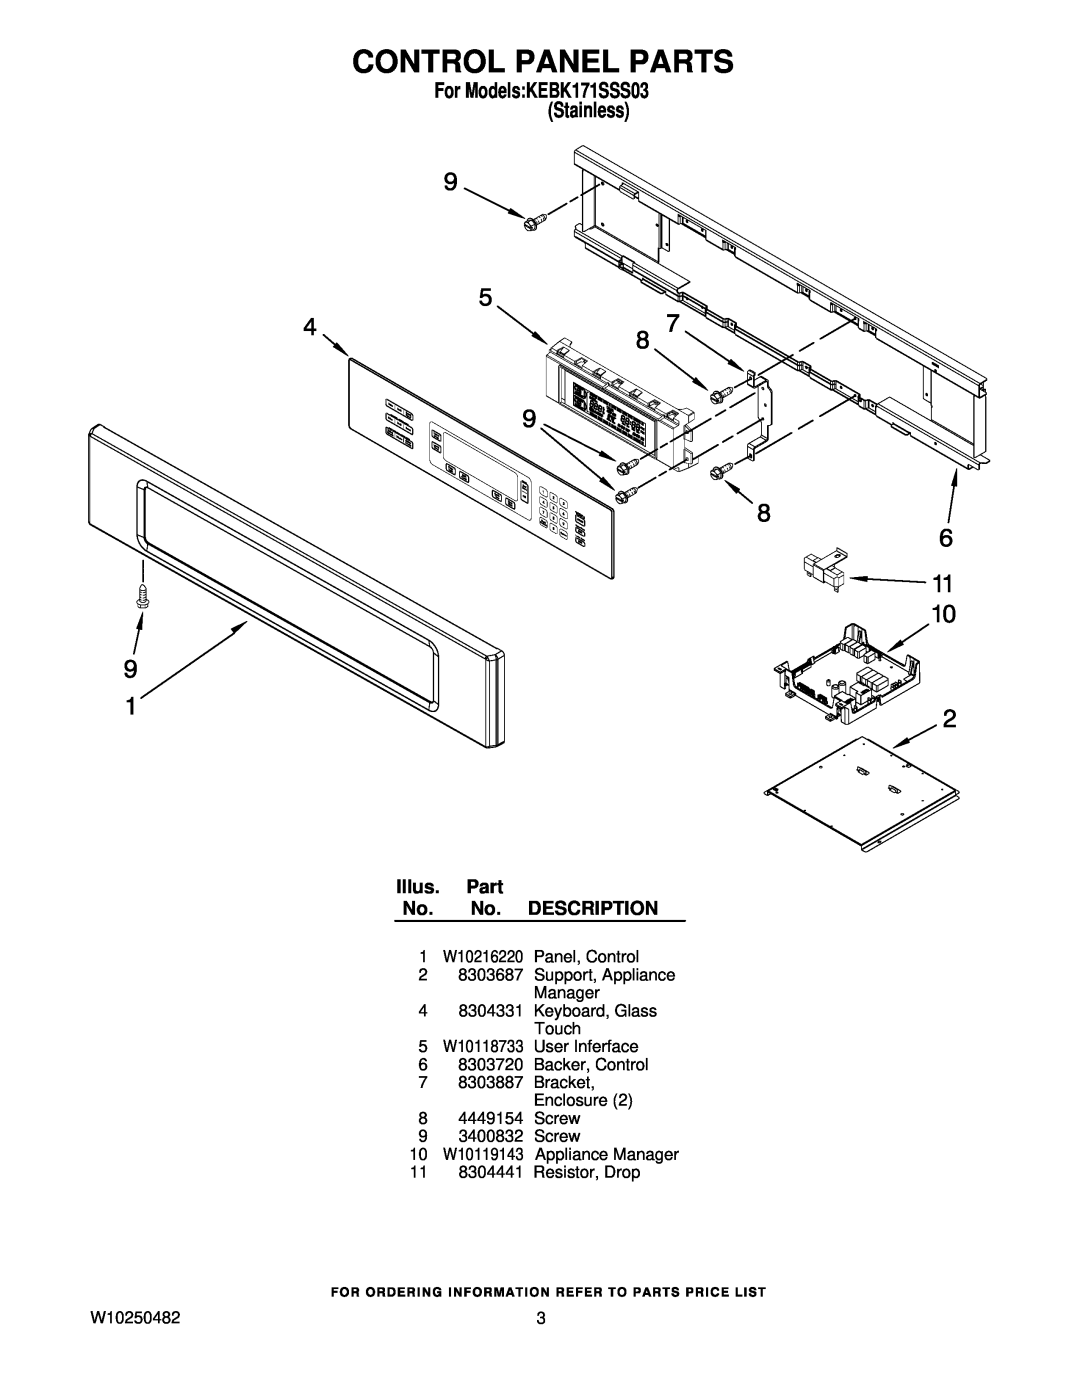 KitchenAid KEBK171SSS03 manual Control Panel Parts, Illus. Part No. No. DESCRIPTION, 11 8304441 Resistor, Drop, W10250482 